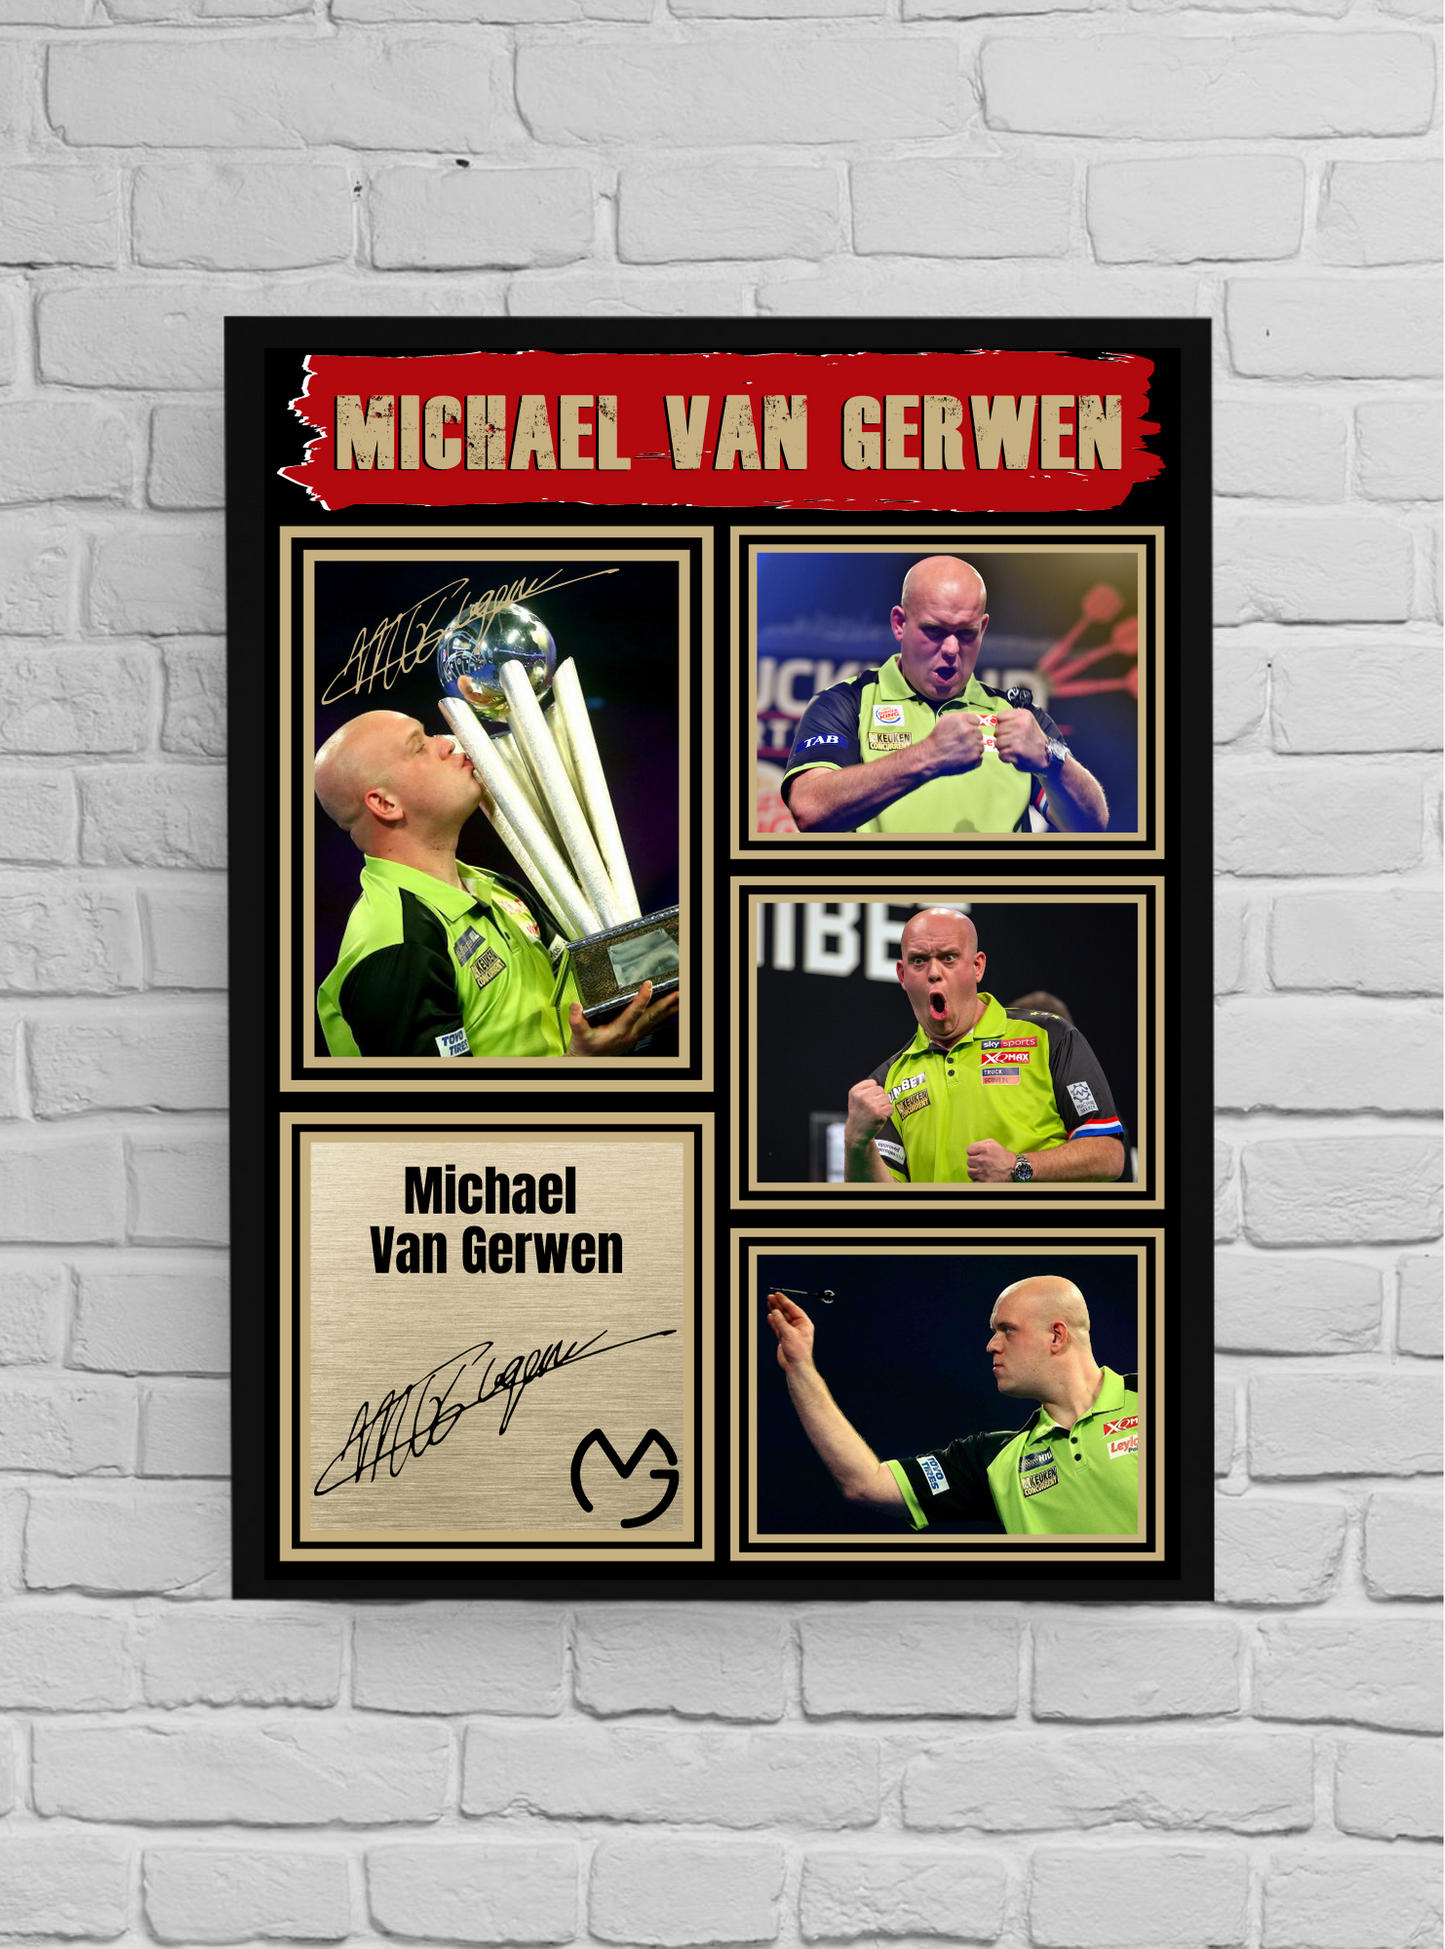 Michael van Gerwen (Darts) #9 - Memorabilia/Collectible/Signed print